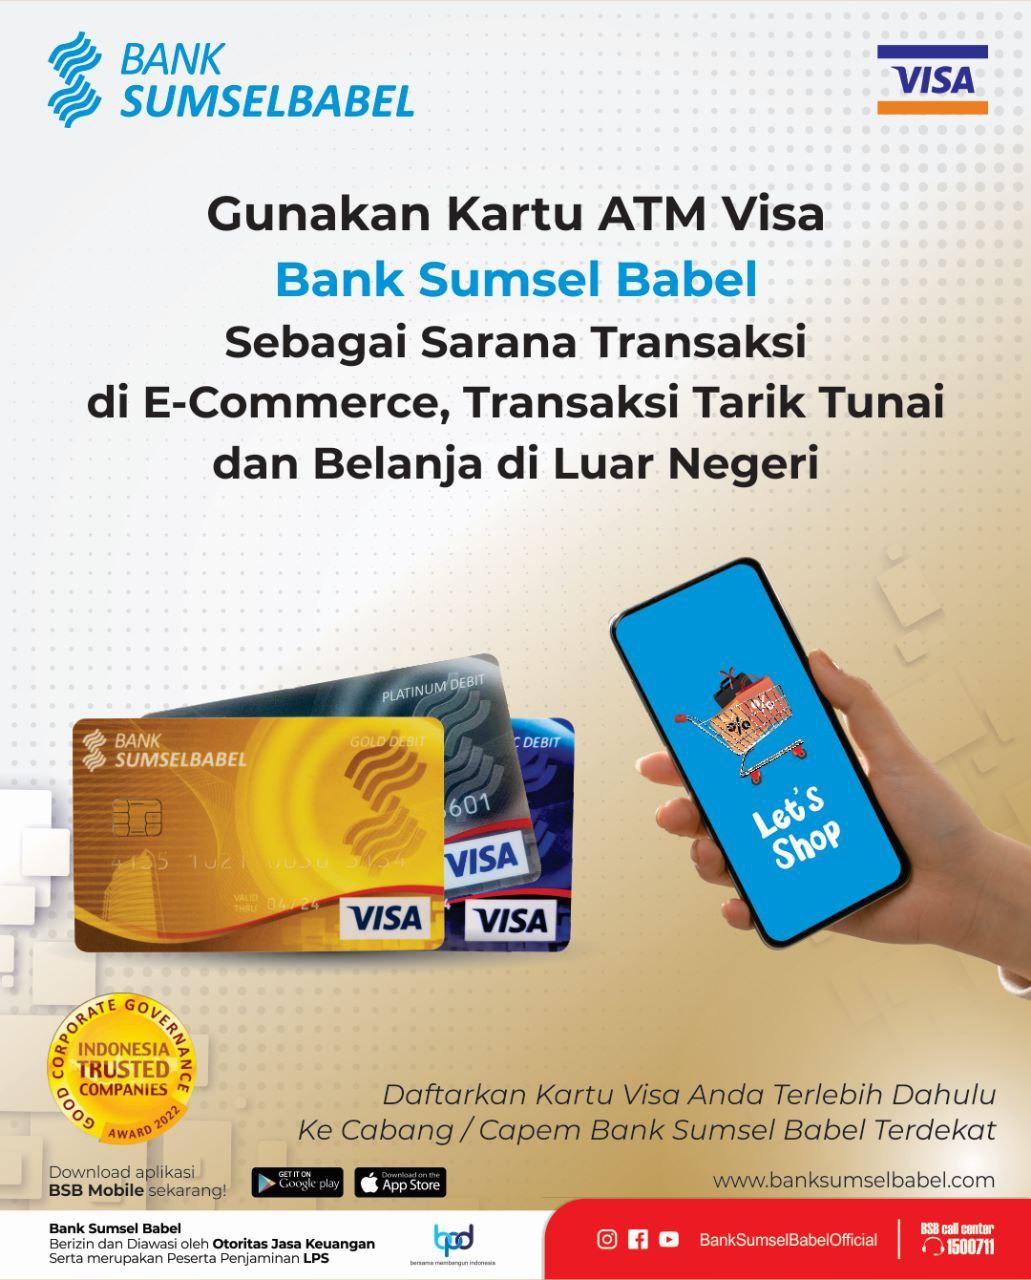 Gunakan Kartu ATM Visa